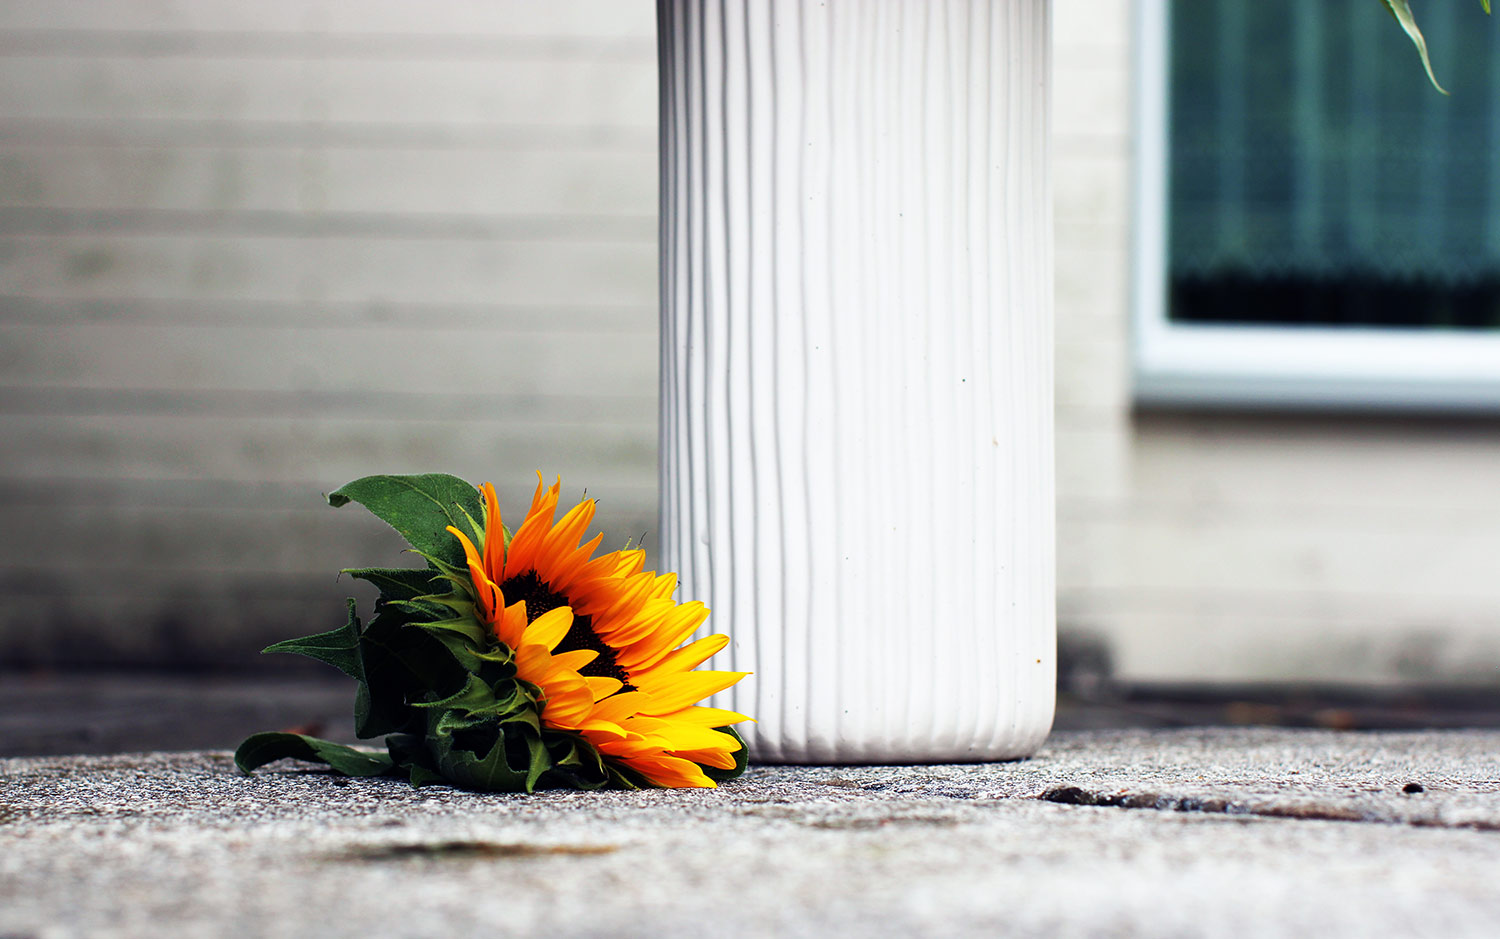 Naturfoto mit Sonnenblume am Boden neben Vase